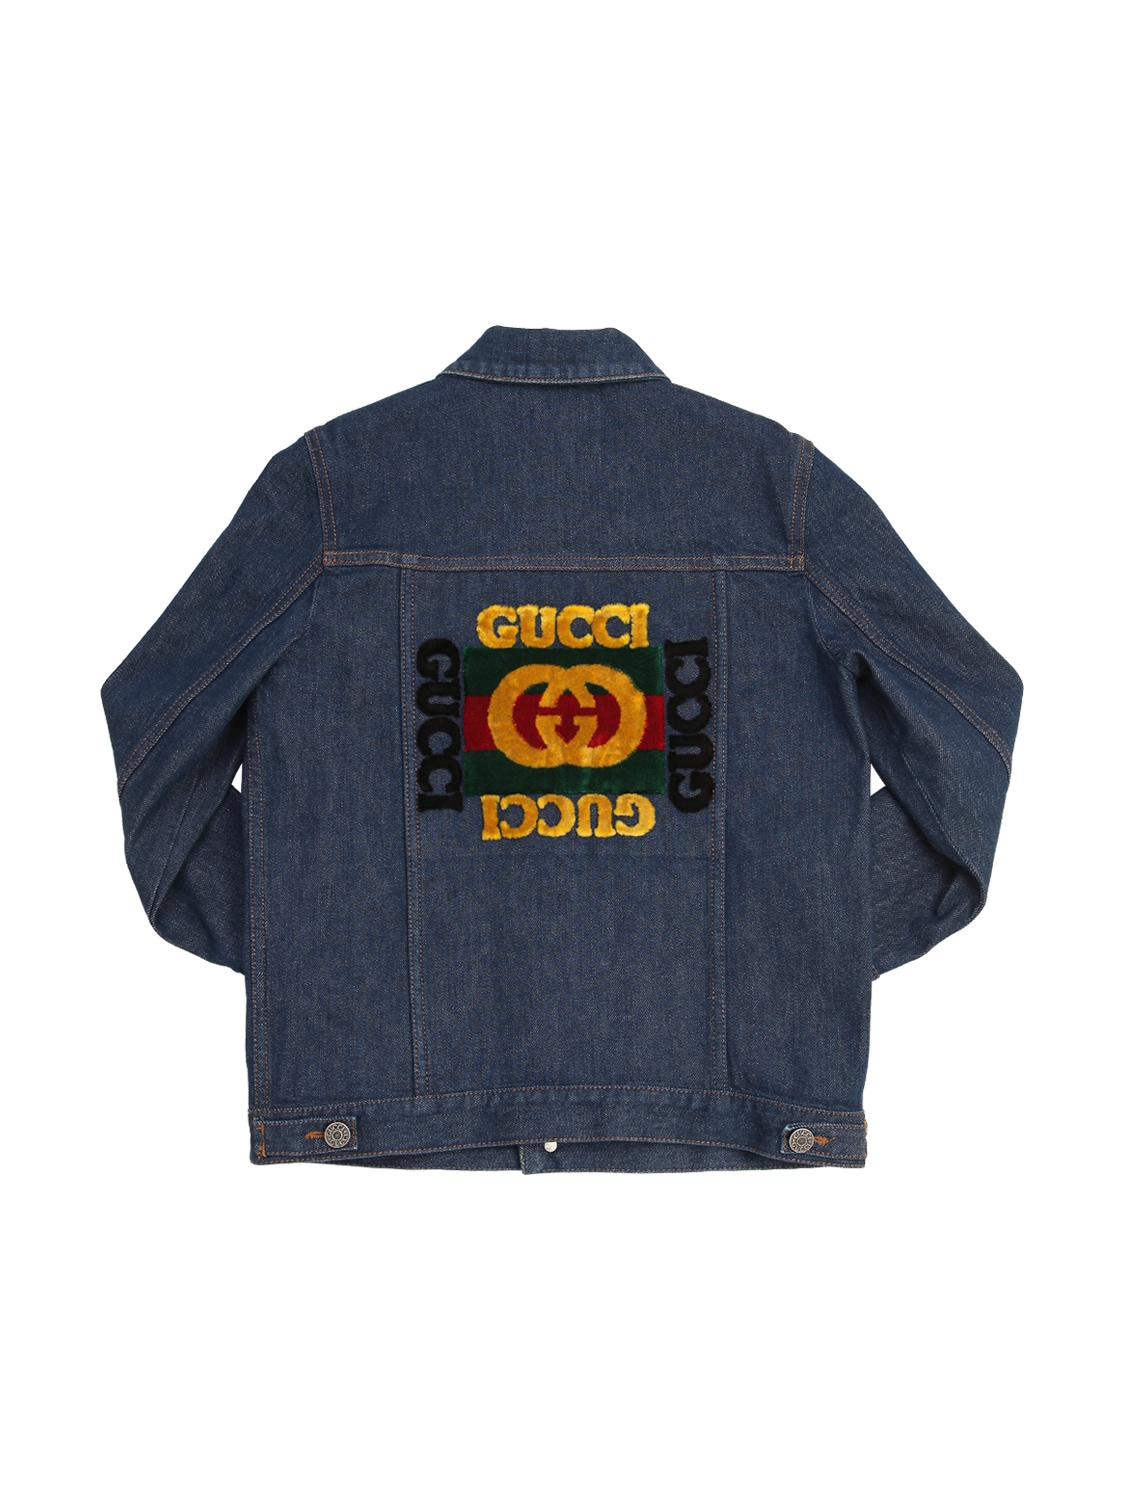 Gucci Kids' Embroidered Cotton Denim Jacket